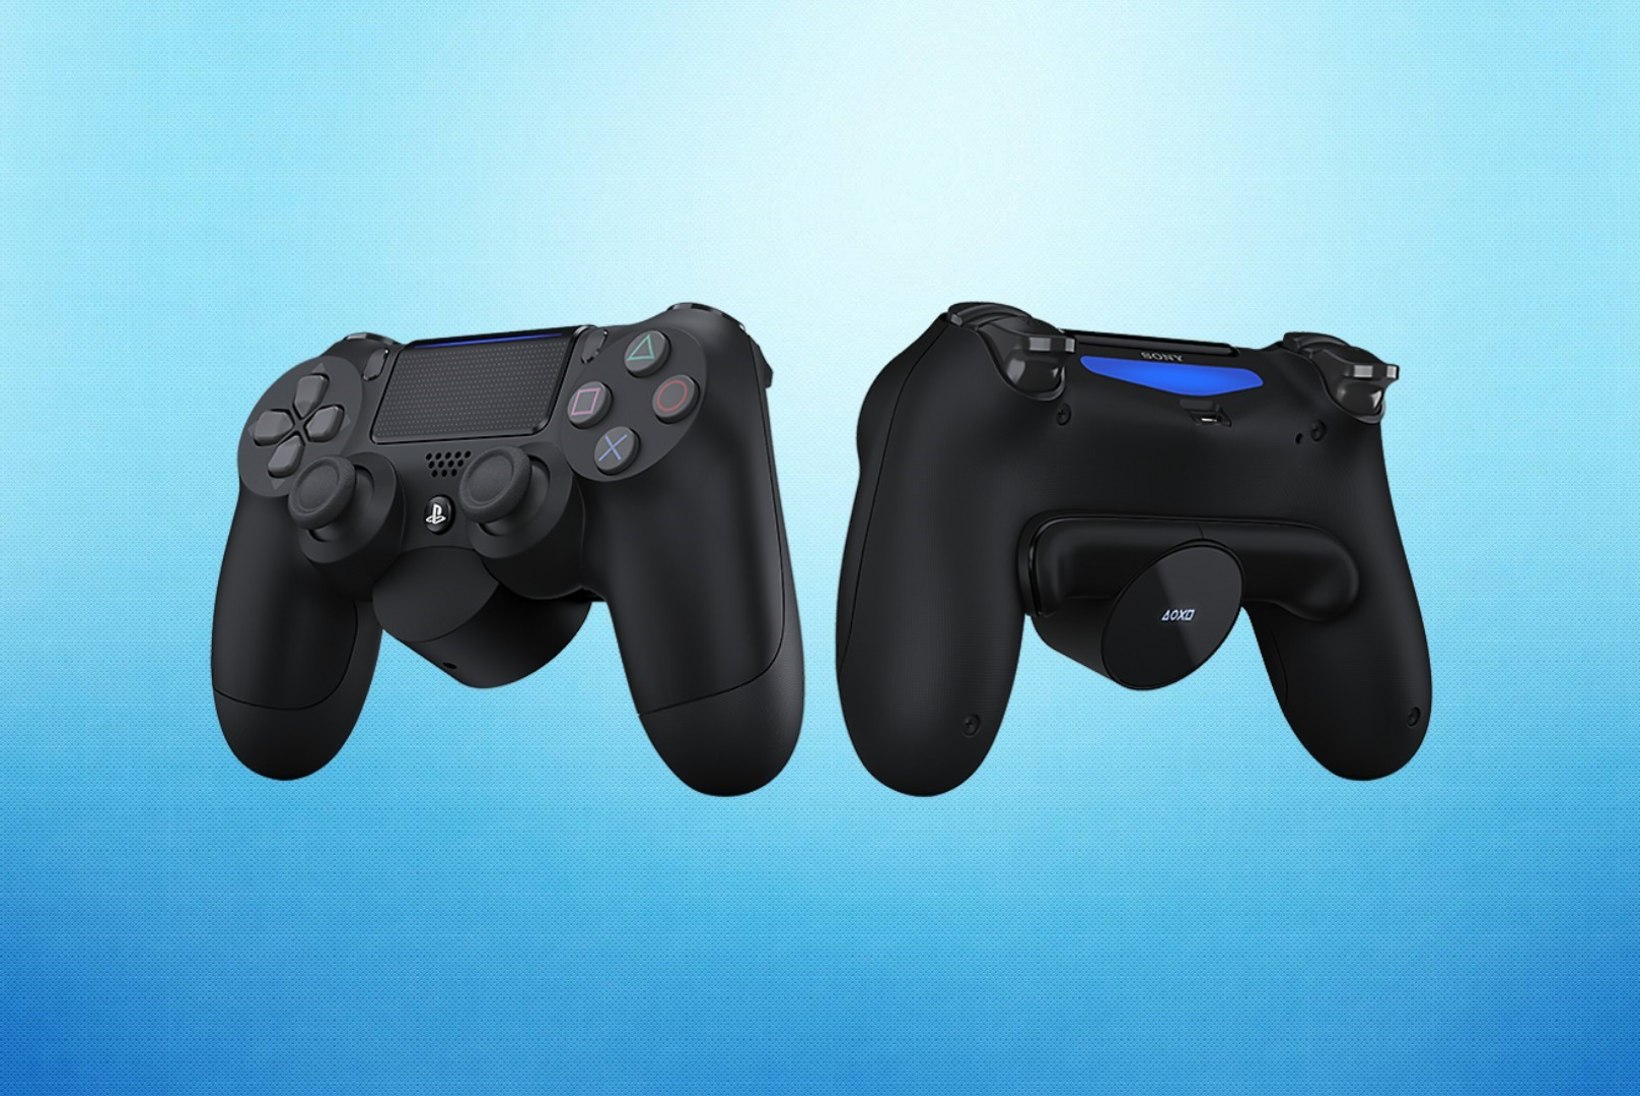 ÕHTULEHE TEST | Kas uus kentsakas lisaseade muudab PlayStation 4 puldi kasutamise paremaks?